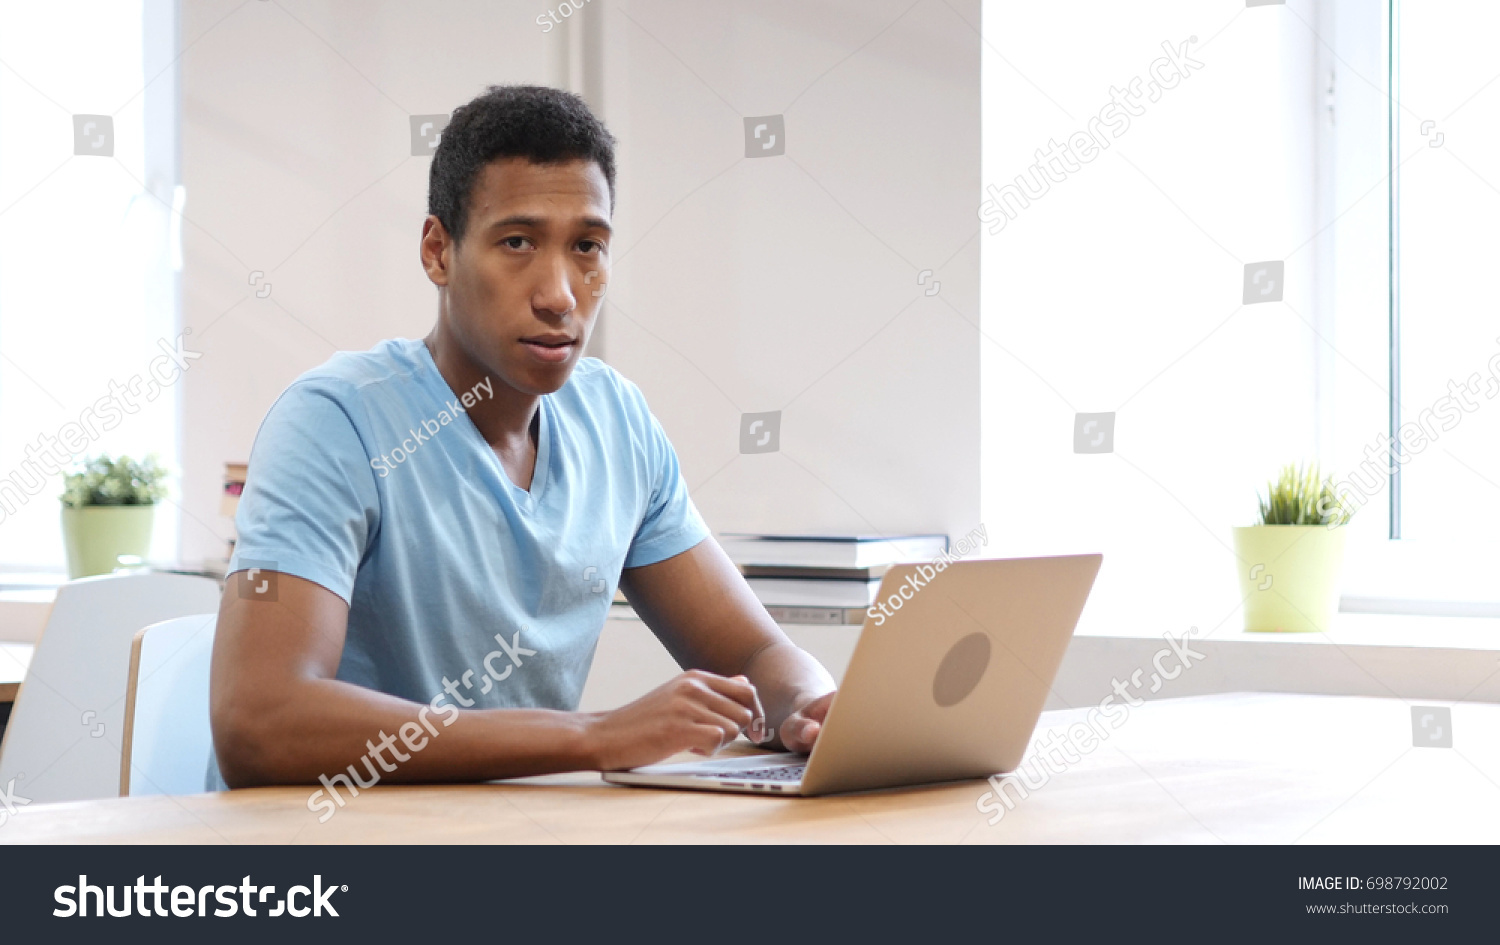 Serious Black Man Looking Toward Camera, Working on Laptop #698792002